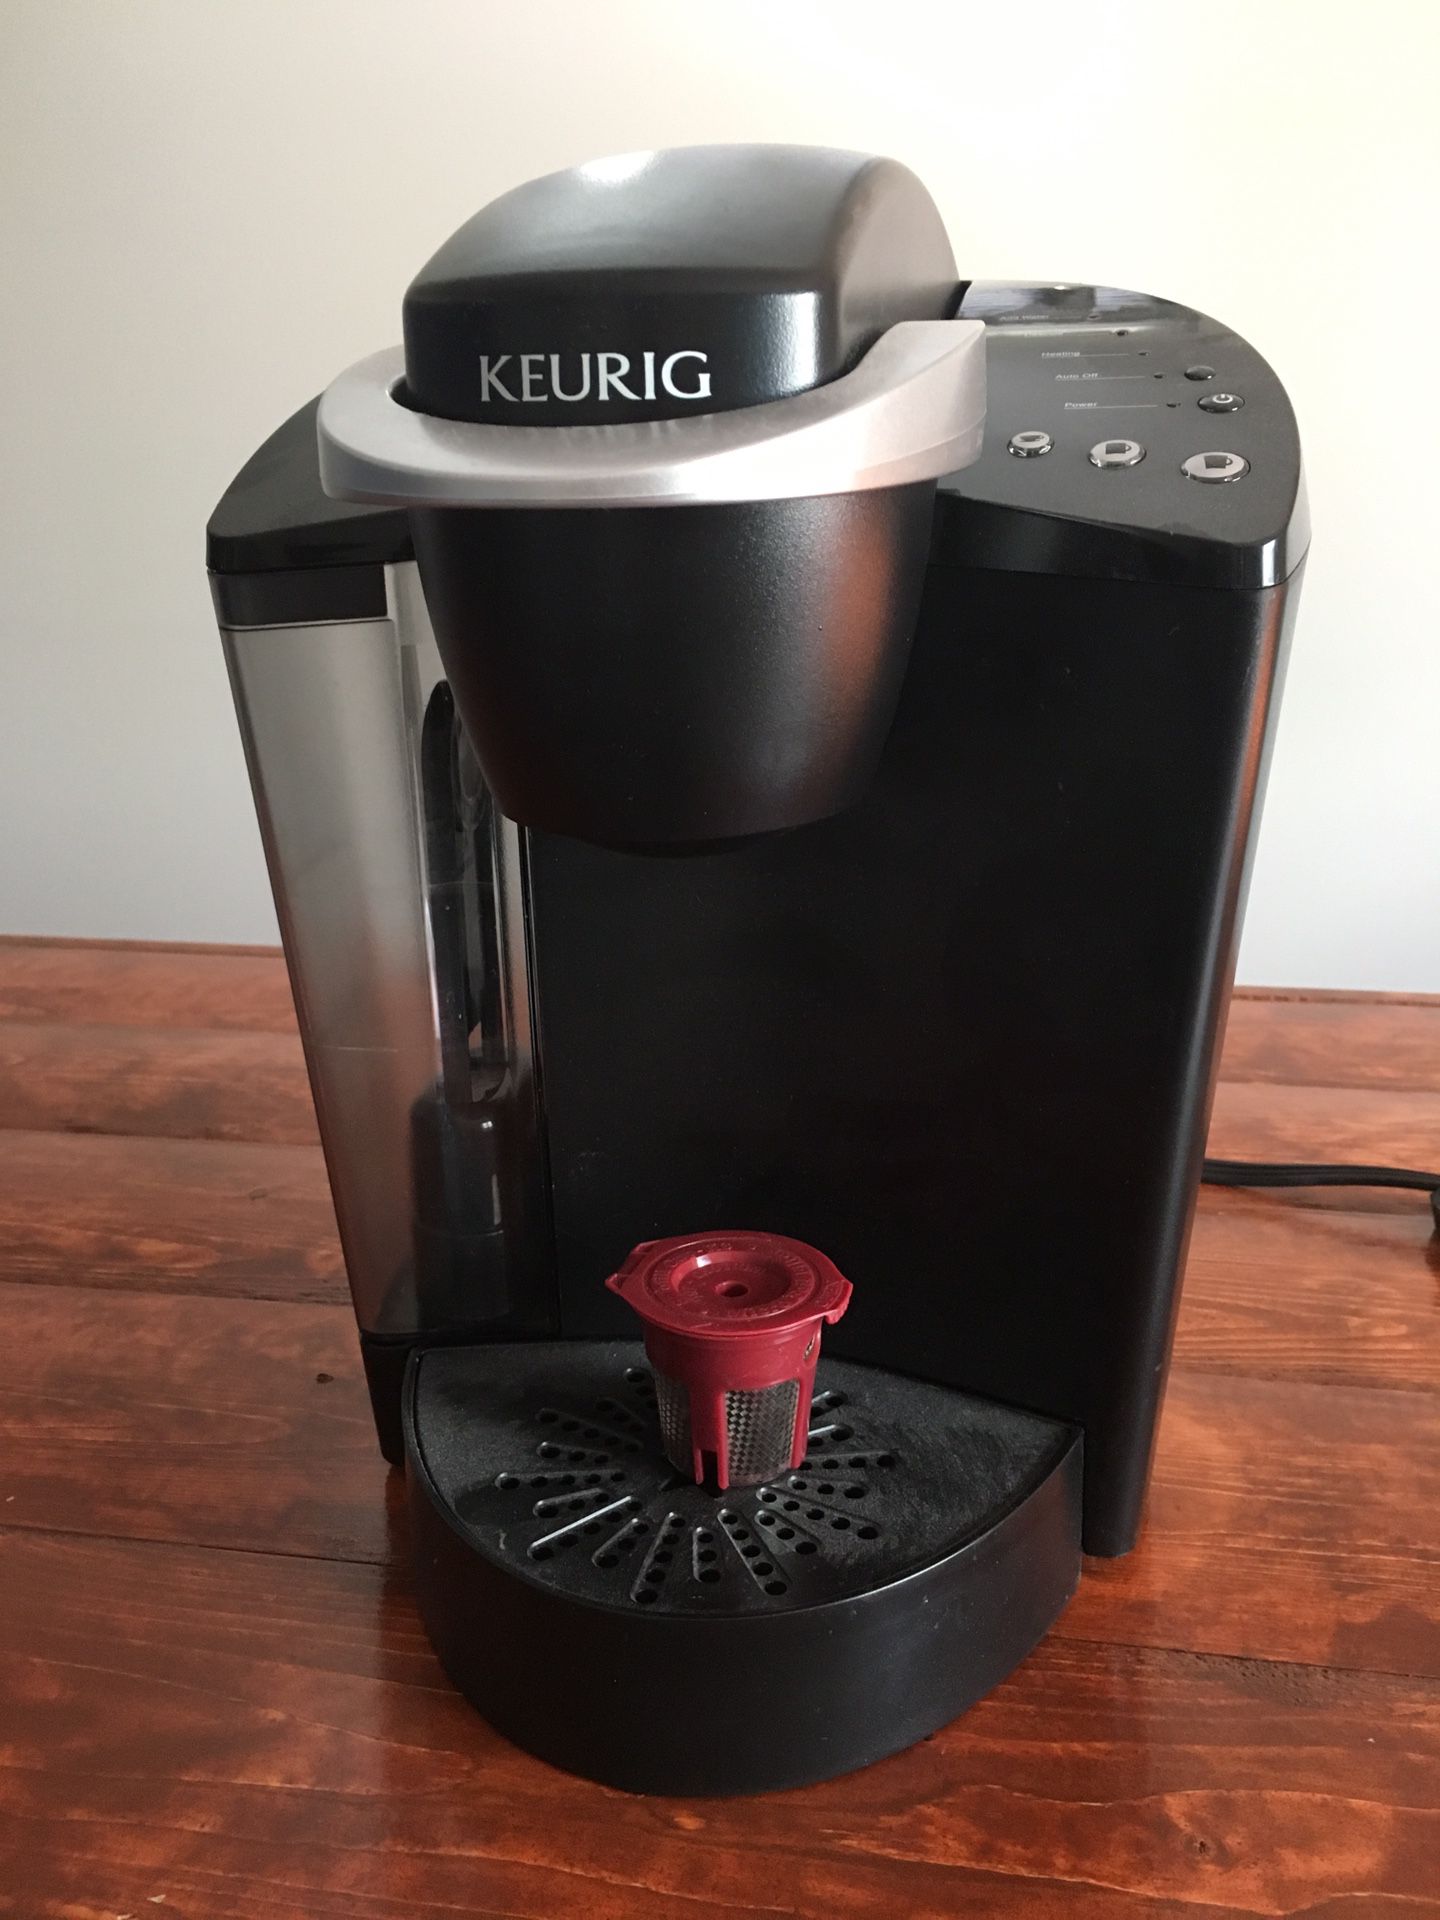 Keurig coffee/tea maker